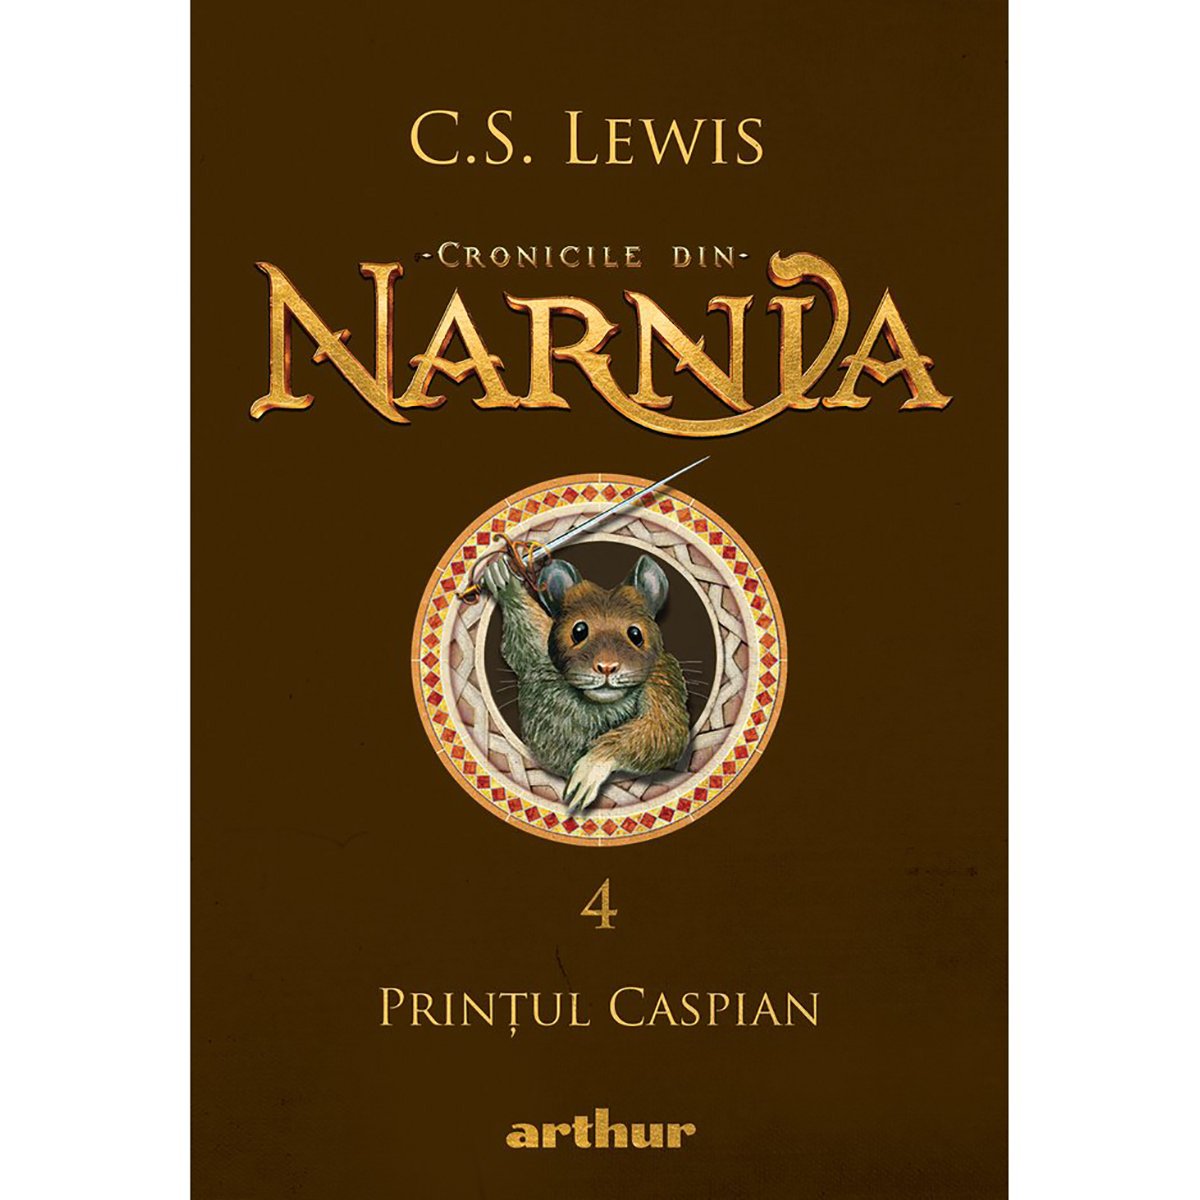 Cronicile din Narnia 4, Printul Caspian, C.S. Lewis